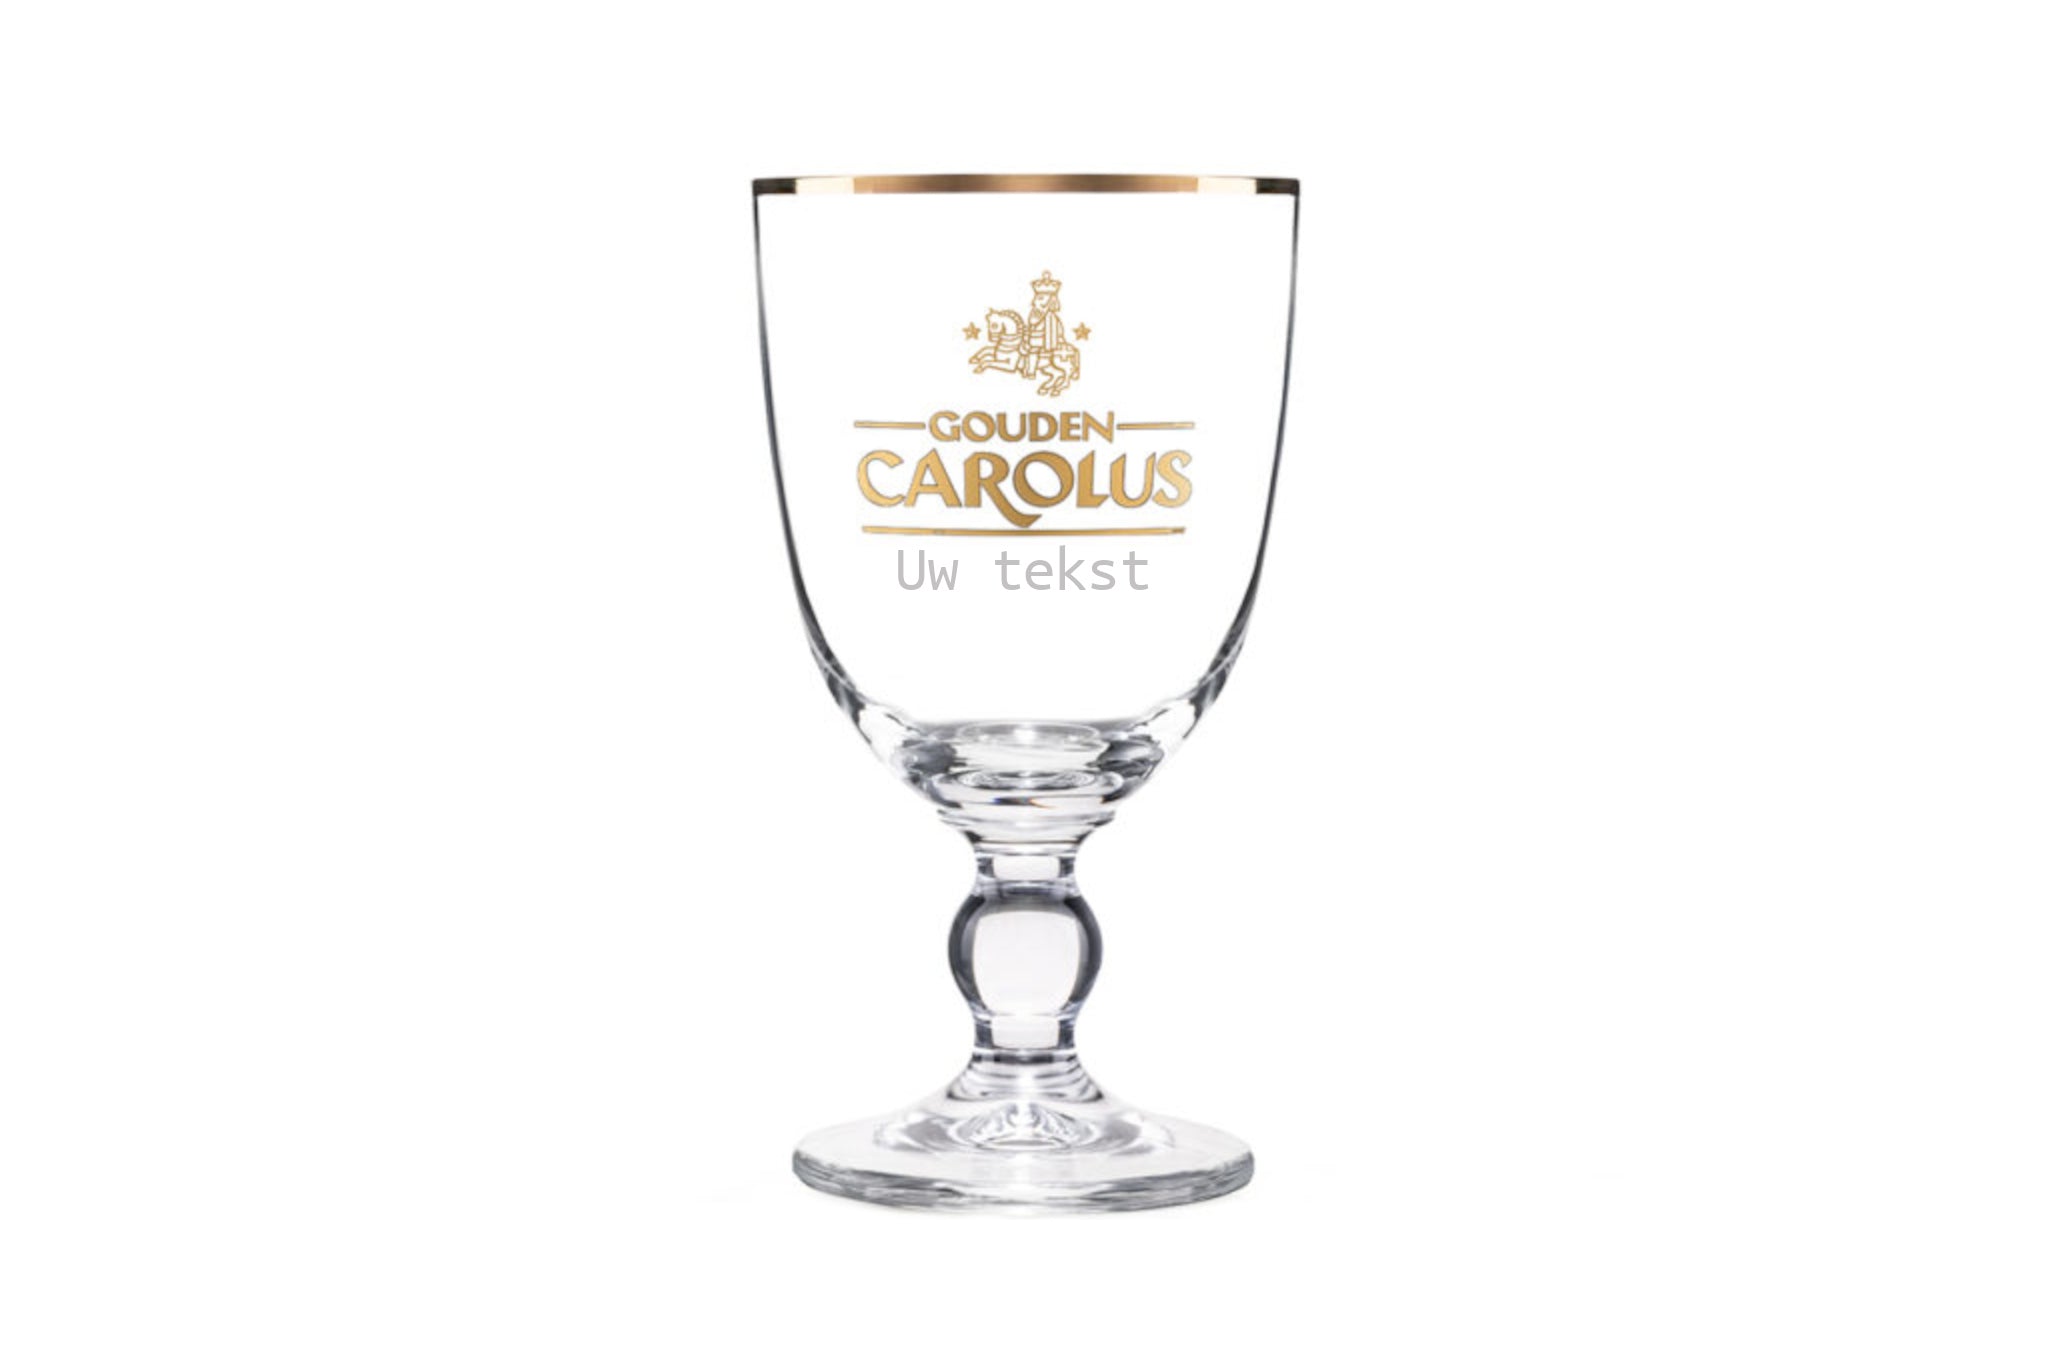 Gepersonaliseerd Gouden Carolus glas met naam gravure